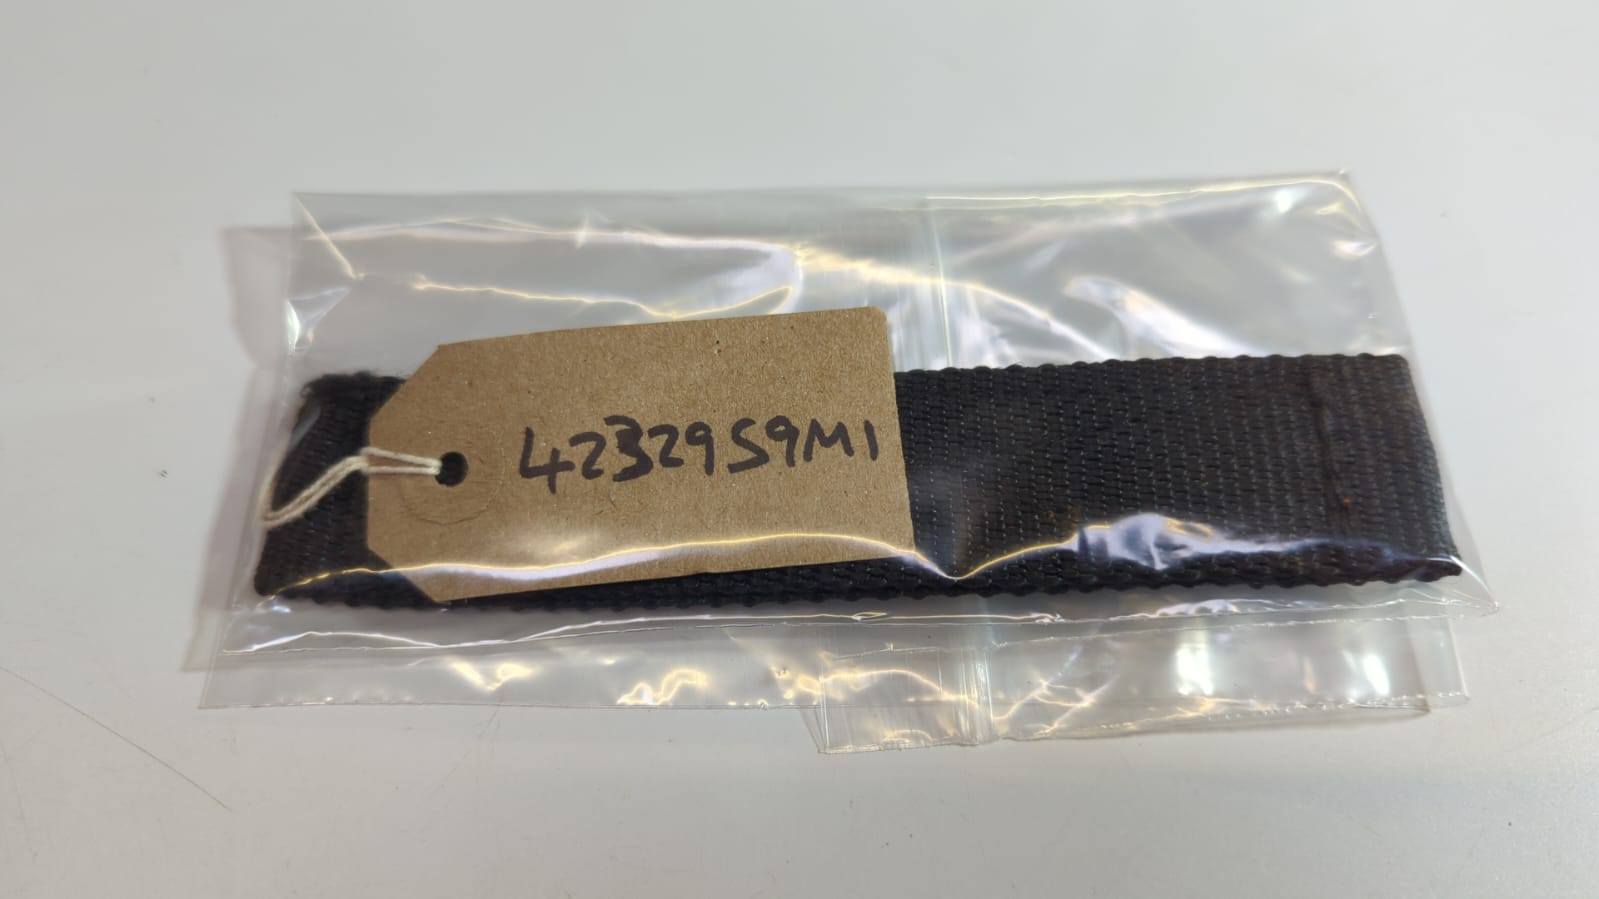 rubber-strap-4232959m1